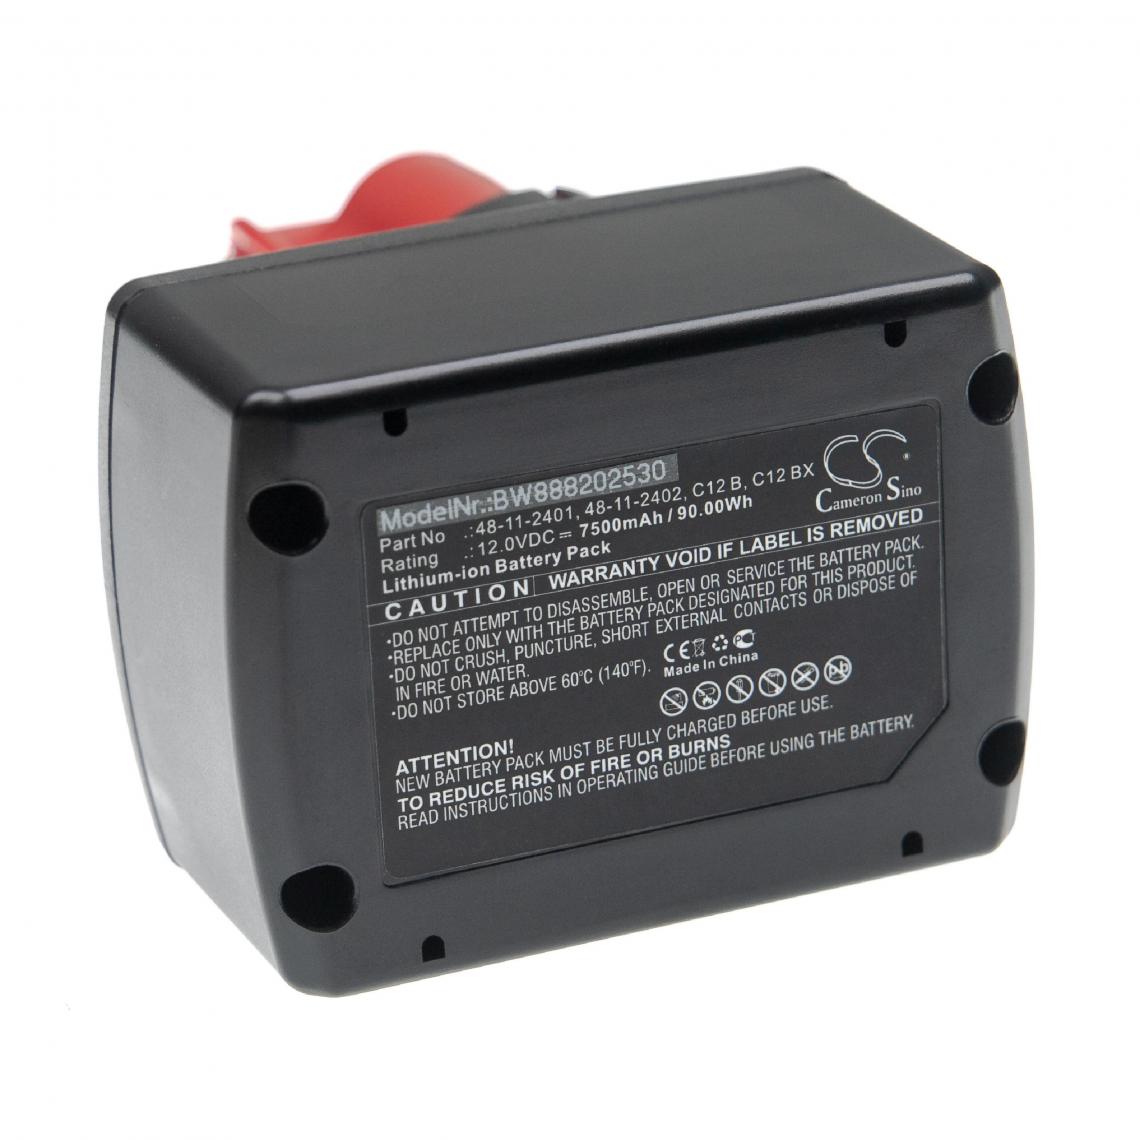 Vhbw - vhbw Batterie compatible avec Milwaukee M12 BIW38-202C, M12 BPD, M12 BPD-0, M12 BPD-202C outil électrique (7500mAh Li-ion 12 V) - Clouterie